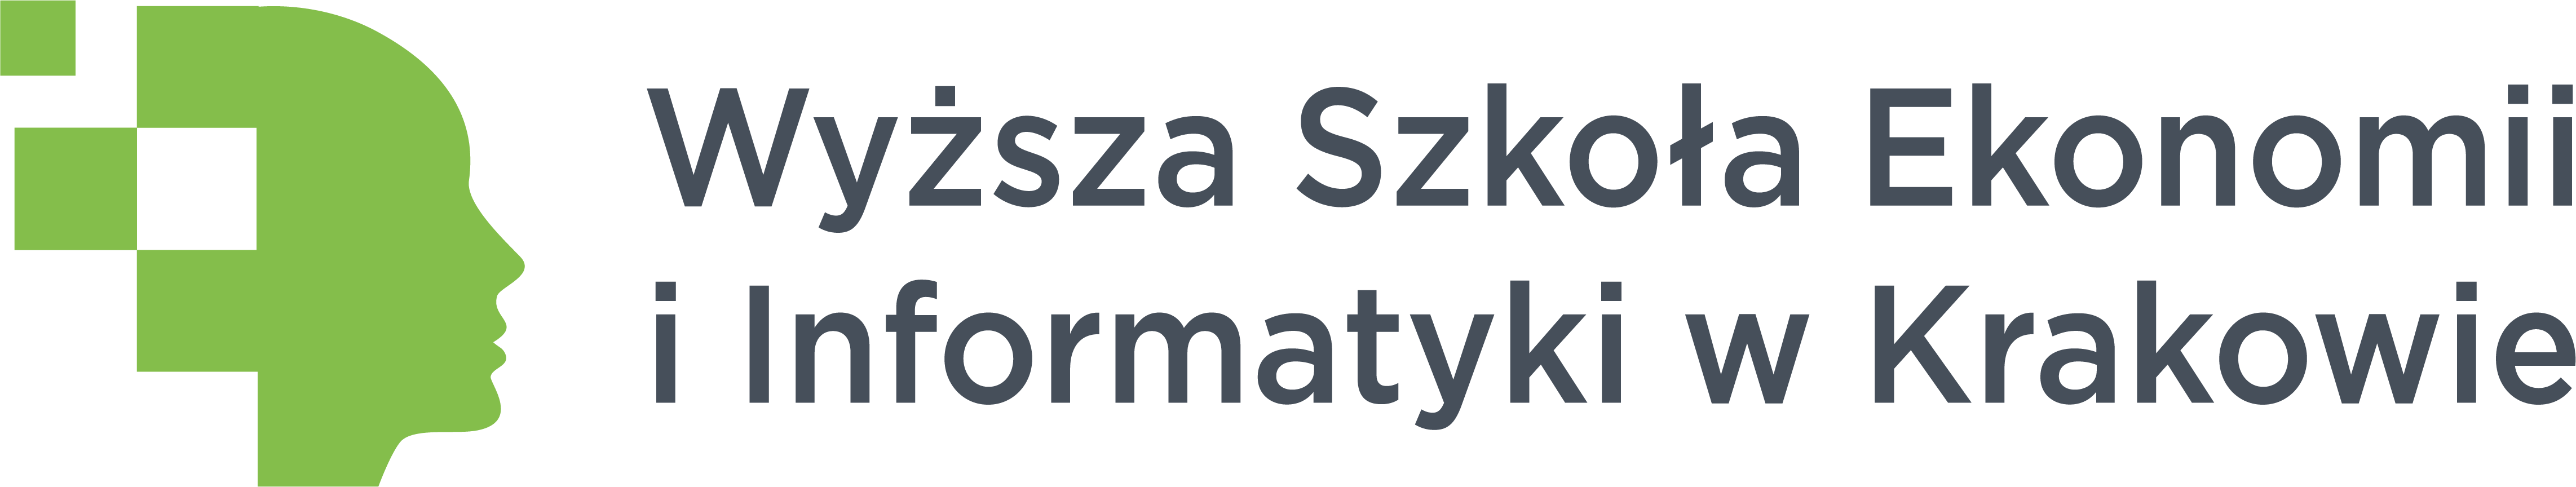 Wyzsza Szkoła Ekonomii i Informatyki w Krakowie